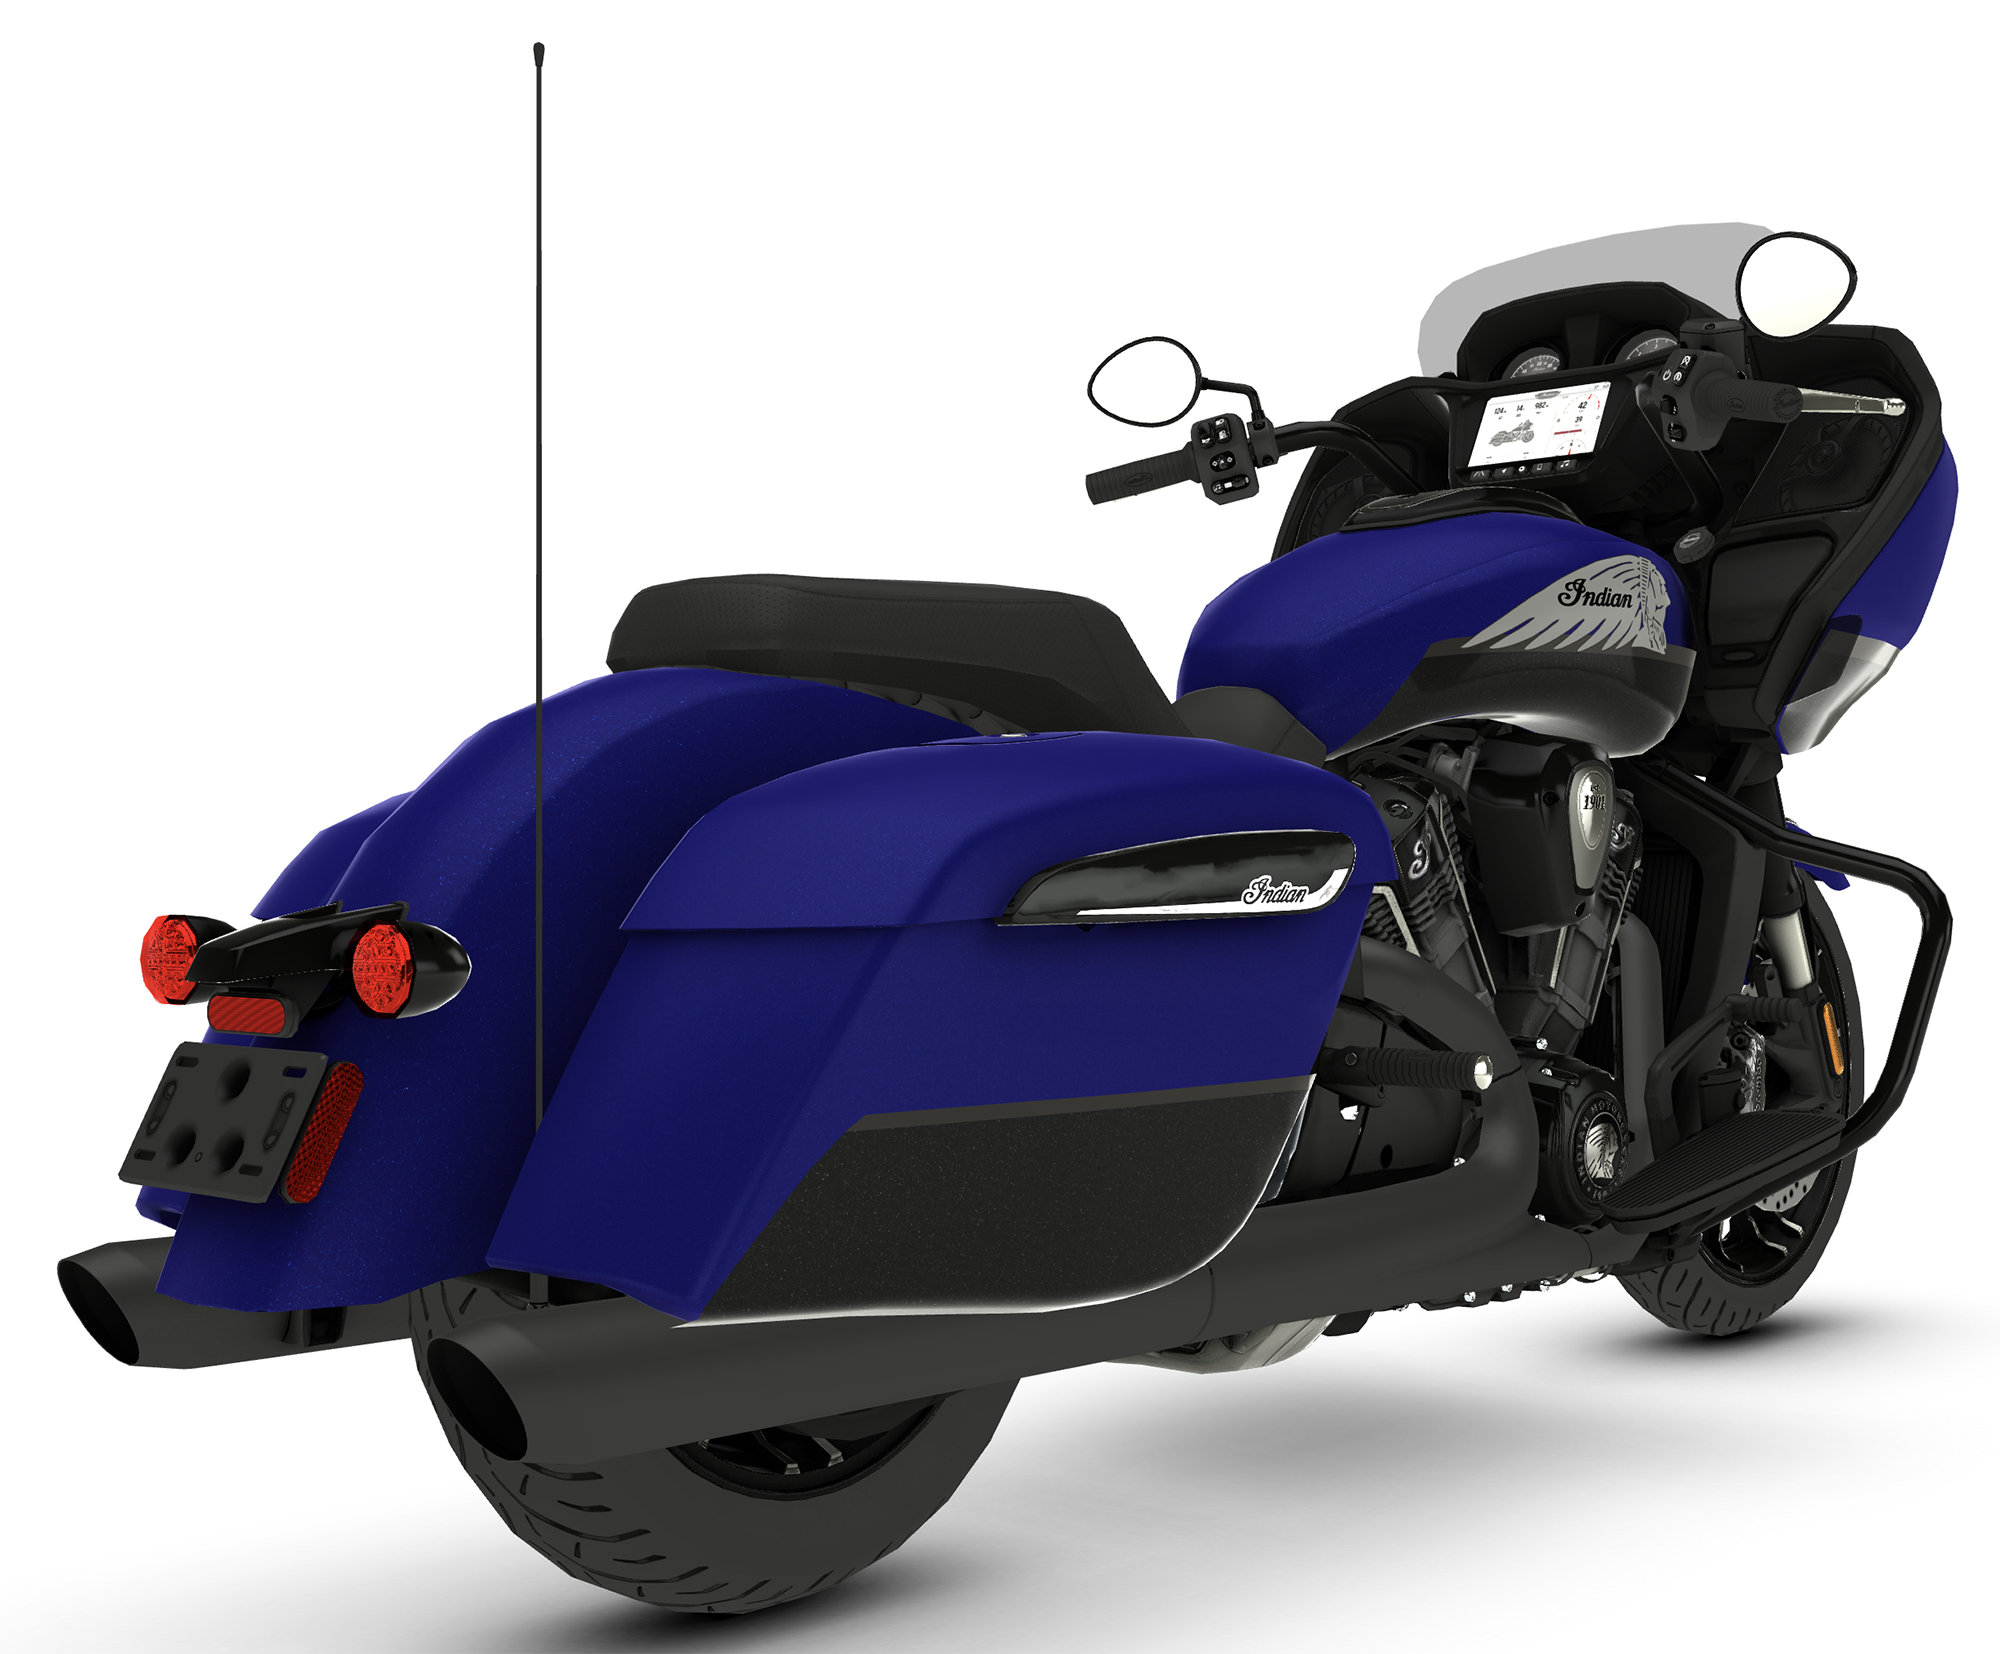 Et billede, der indeholder motorcykel, dk, hjul, kretj

Automatisk genereret beskrivelse